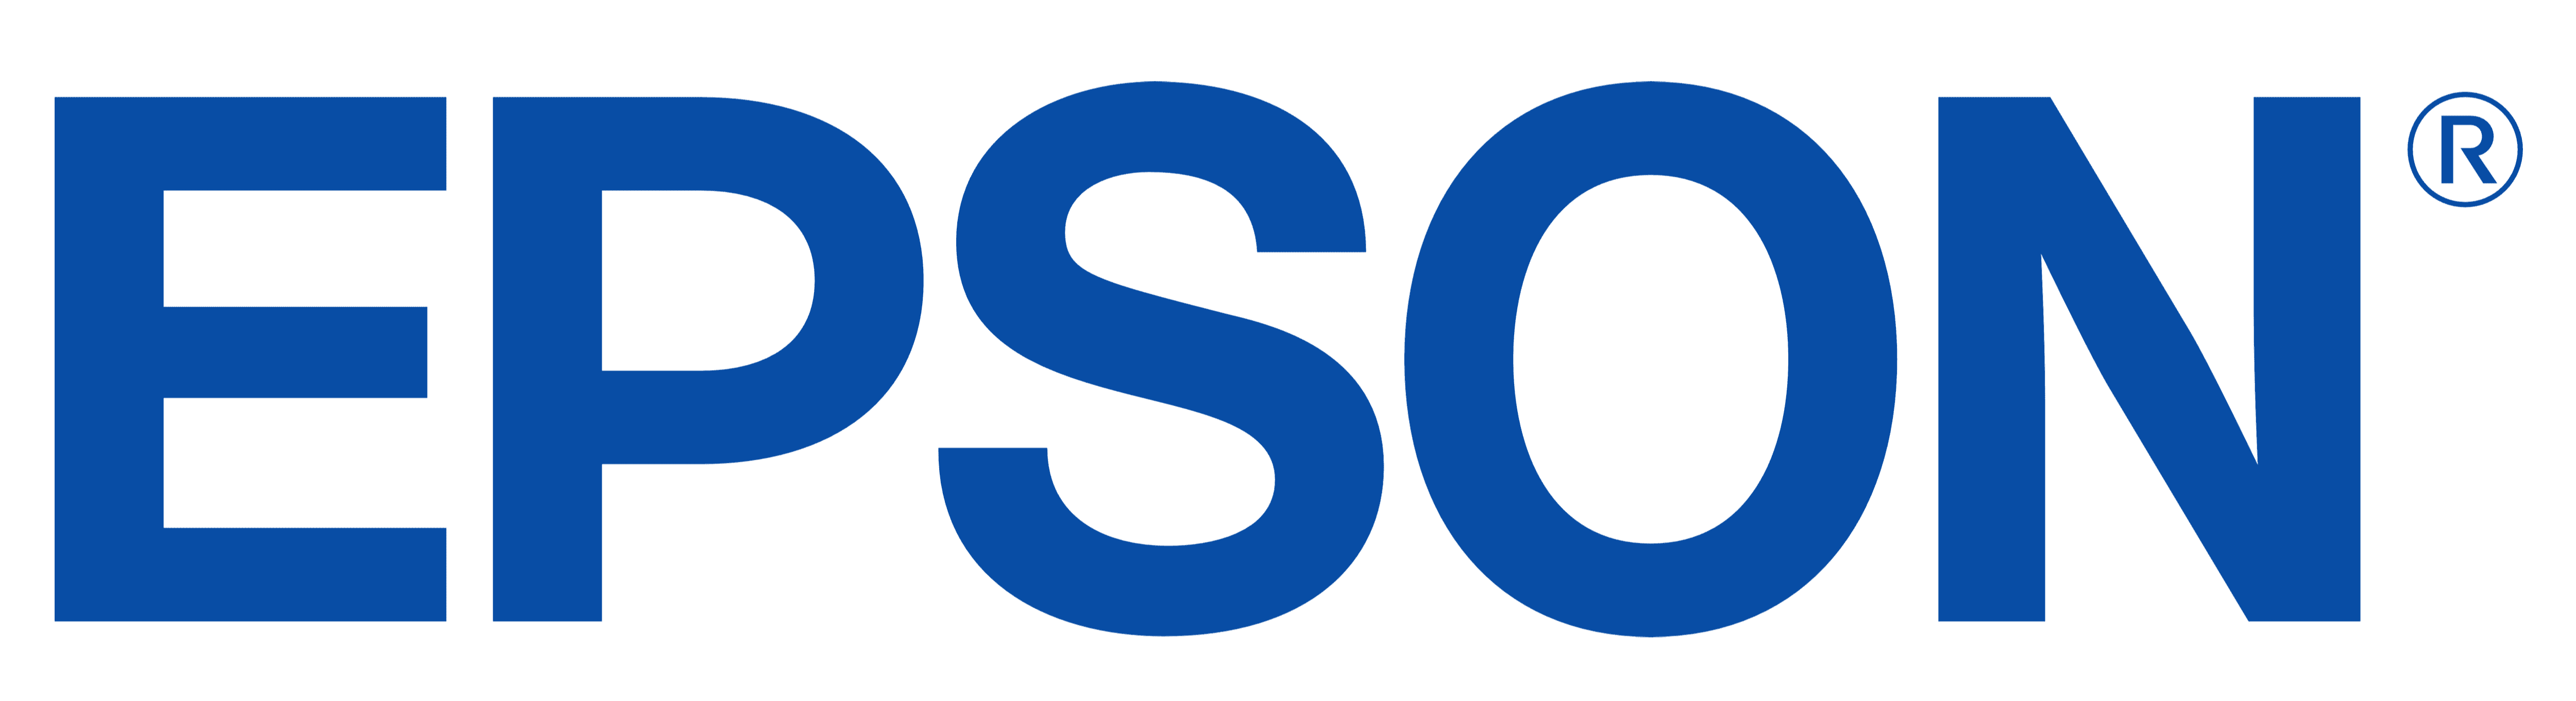 Epson-Logo-2